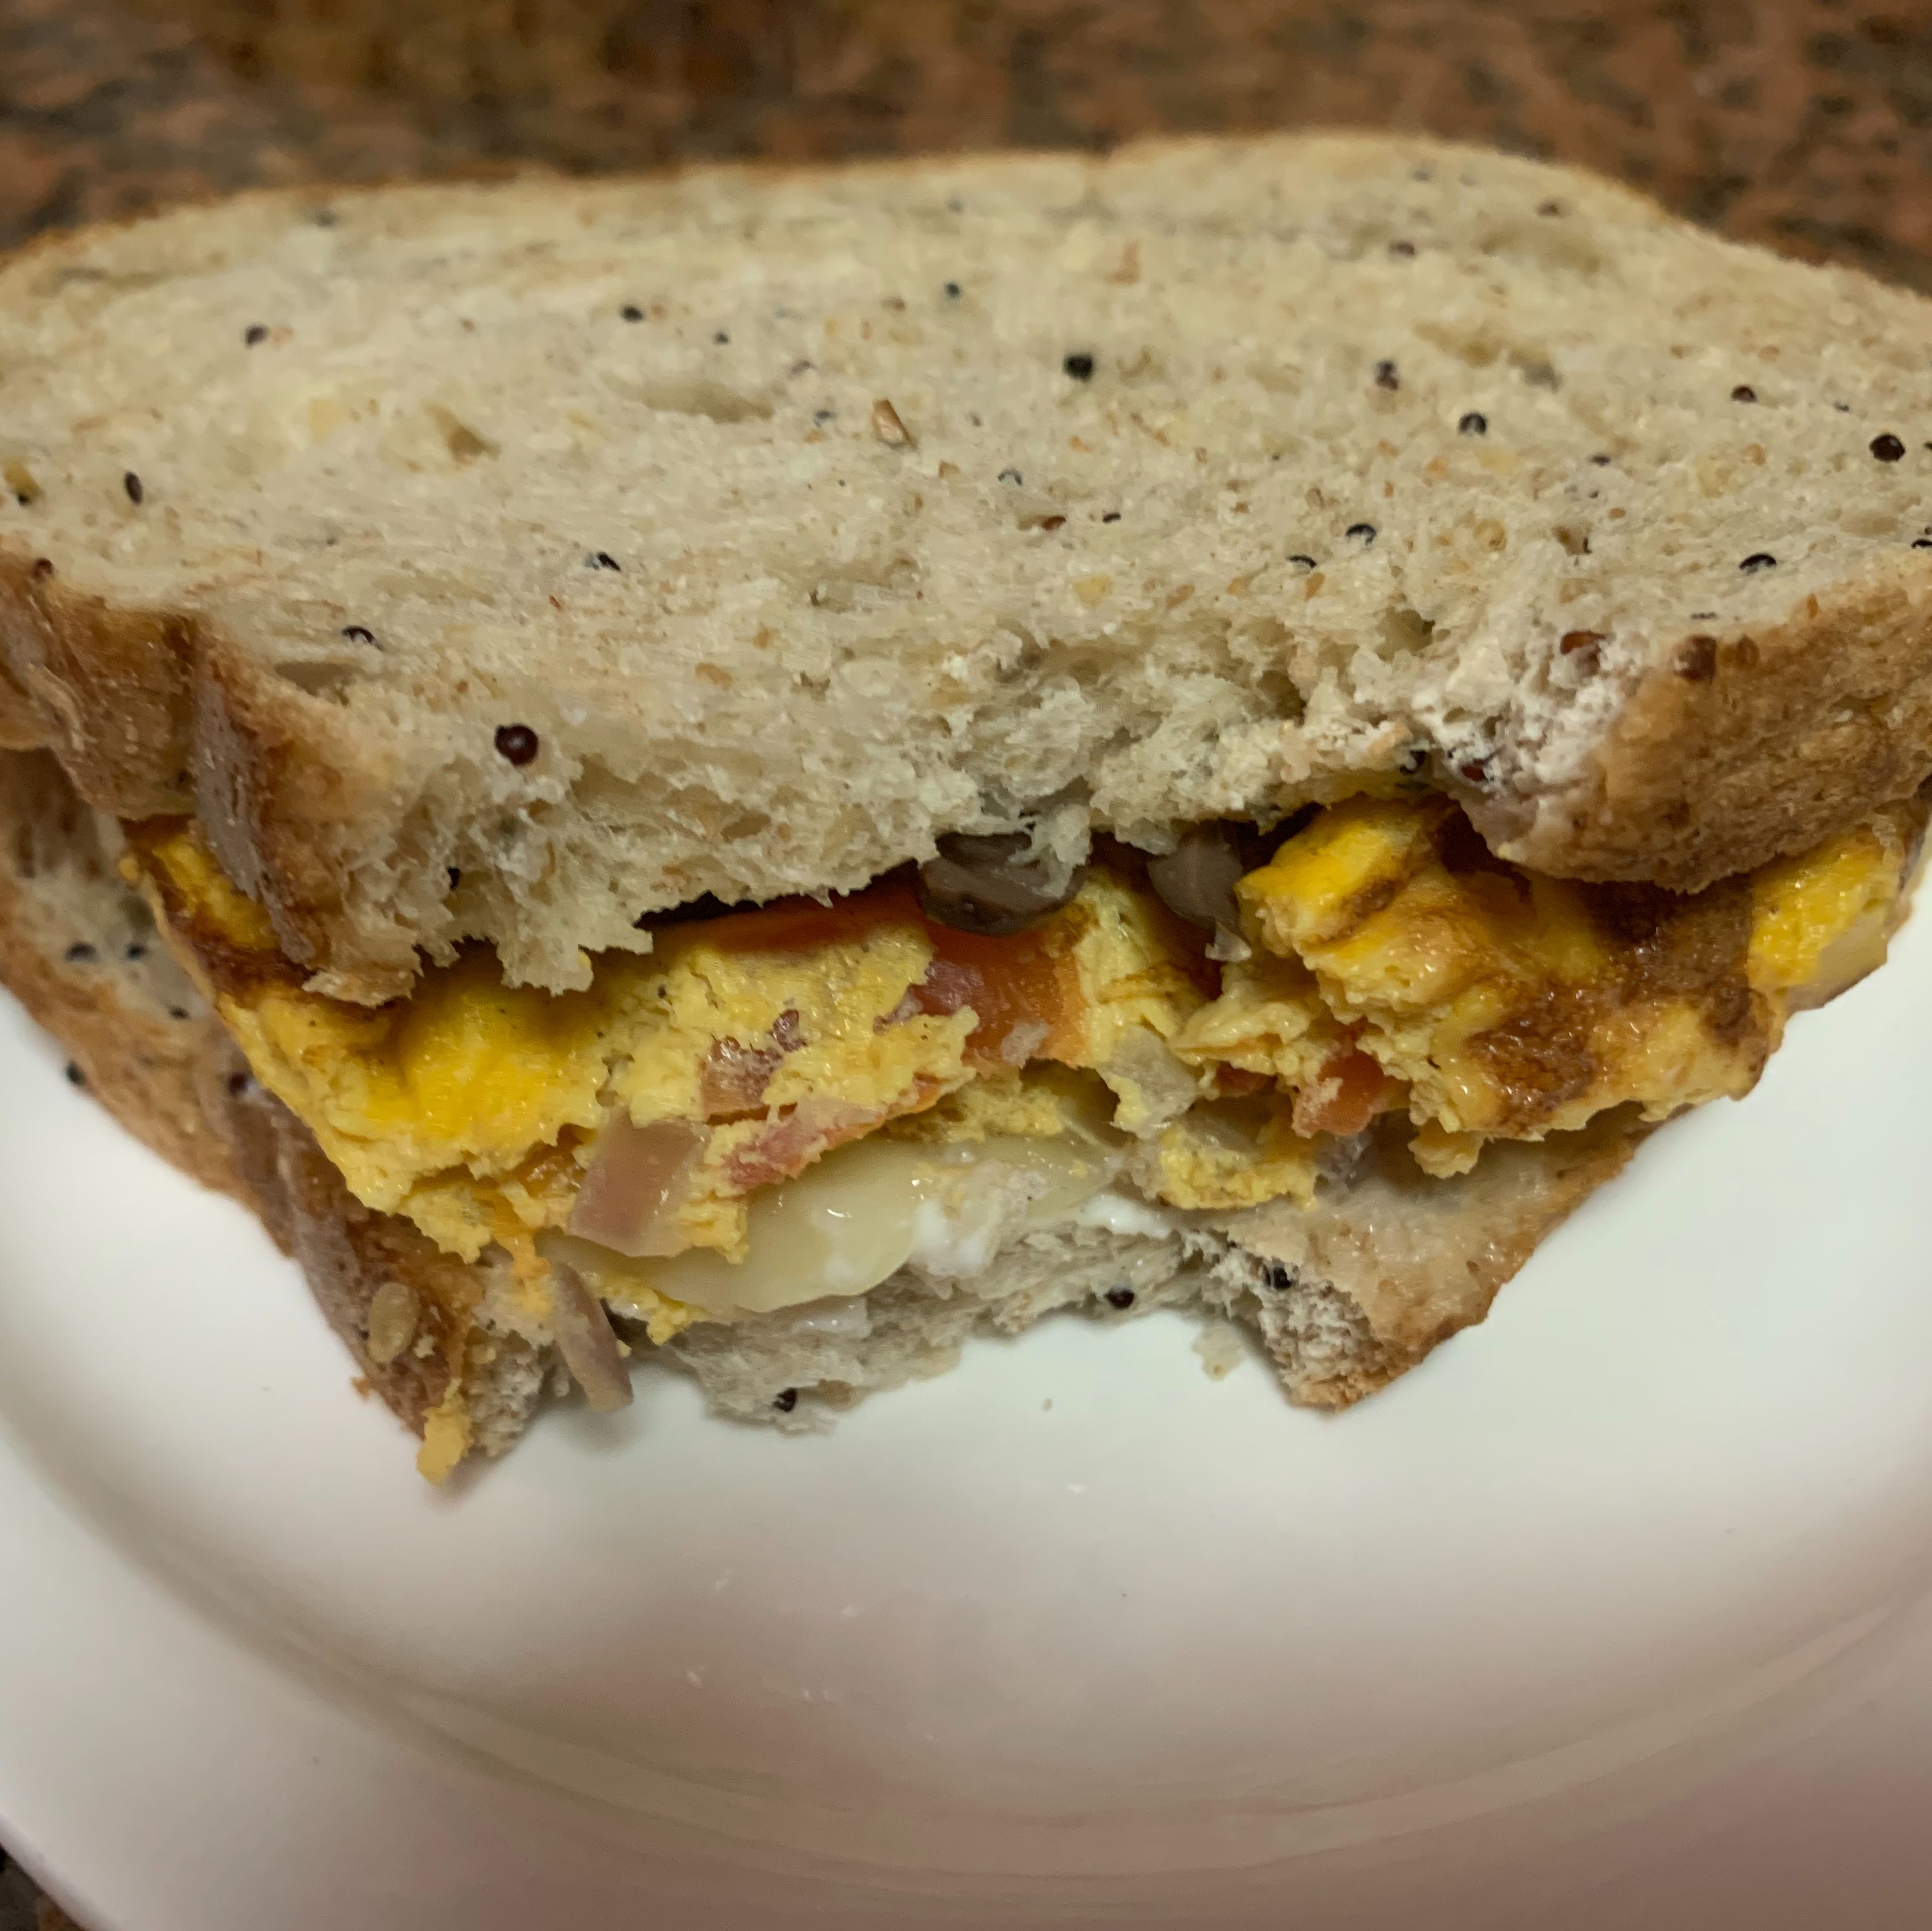 The omelet egg sandwich